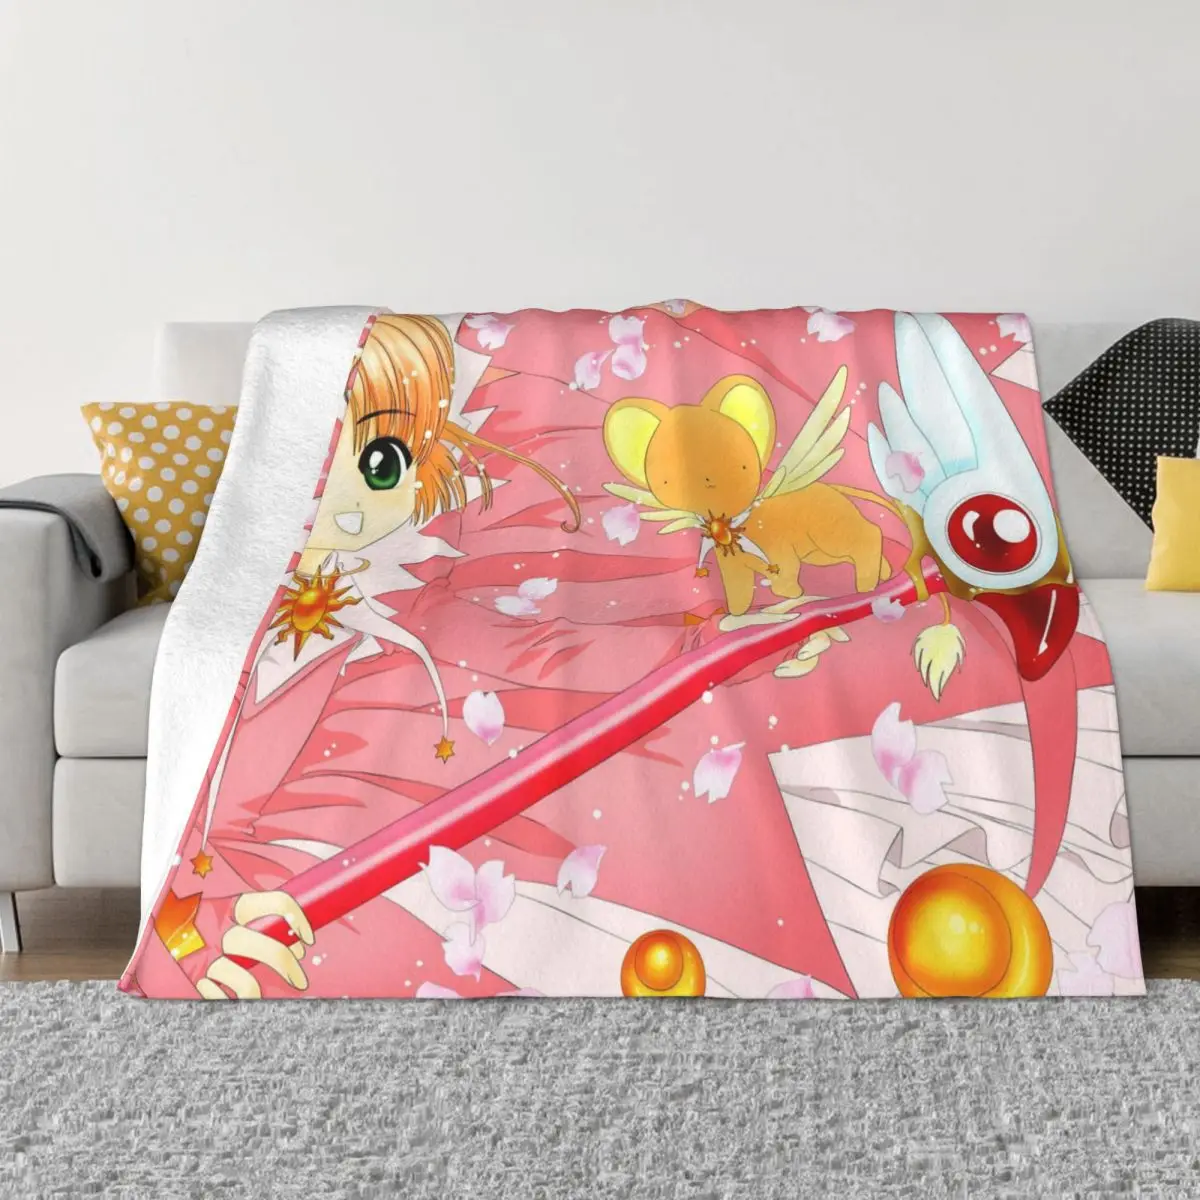 Kawaii Cardcaptor Sakura Мультяшное одеяло, Флисовое покрывало с милым аниме, легкие пледы для спальни, диван-кровать, коврик